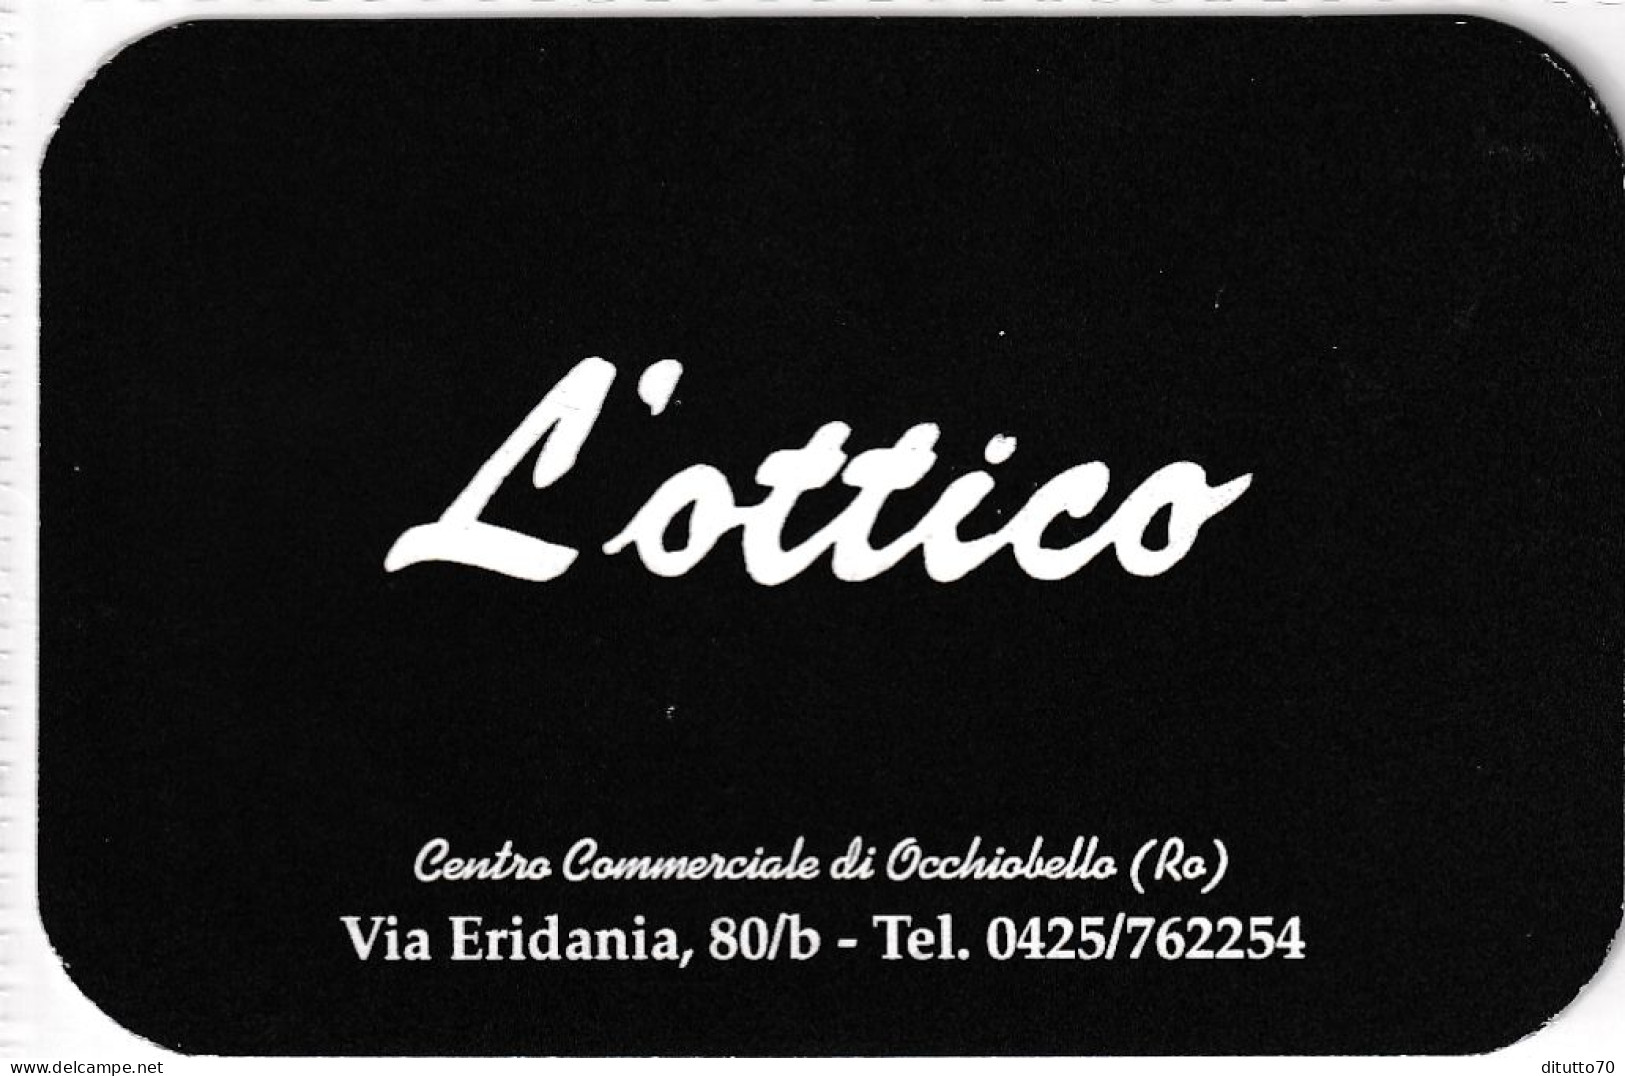 Calendarietto - L'ottico - Rovigo - Anno 1998 - Small : 1991-00